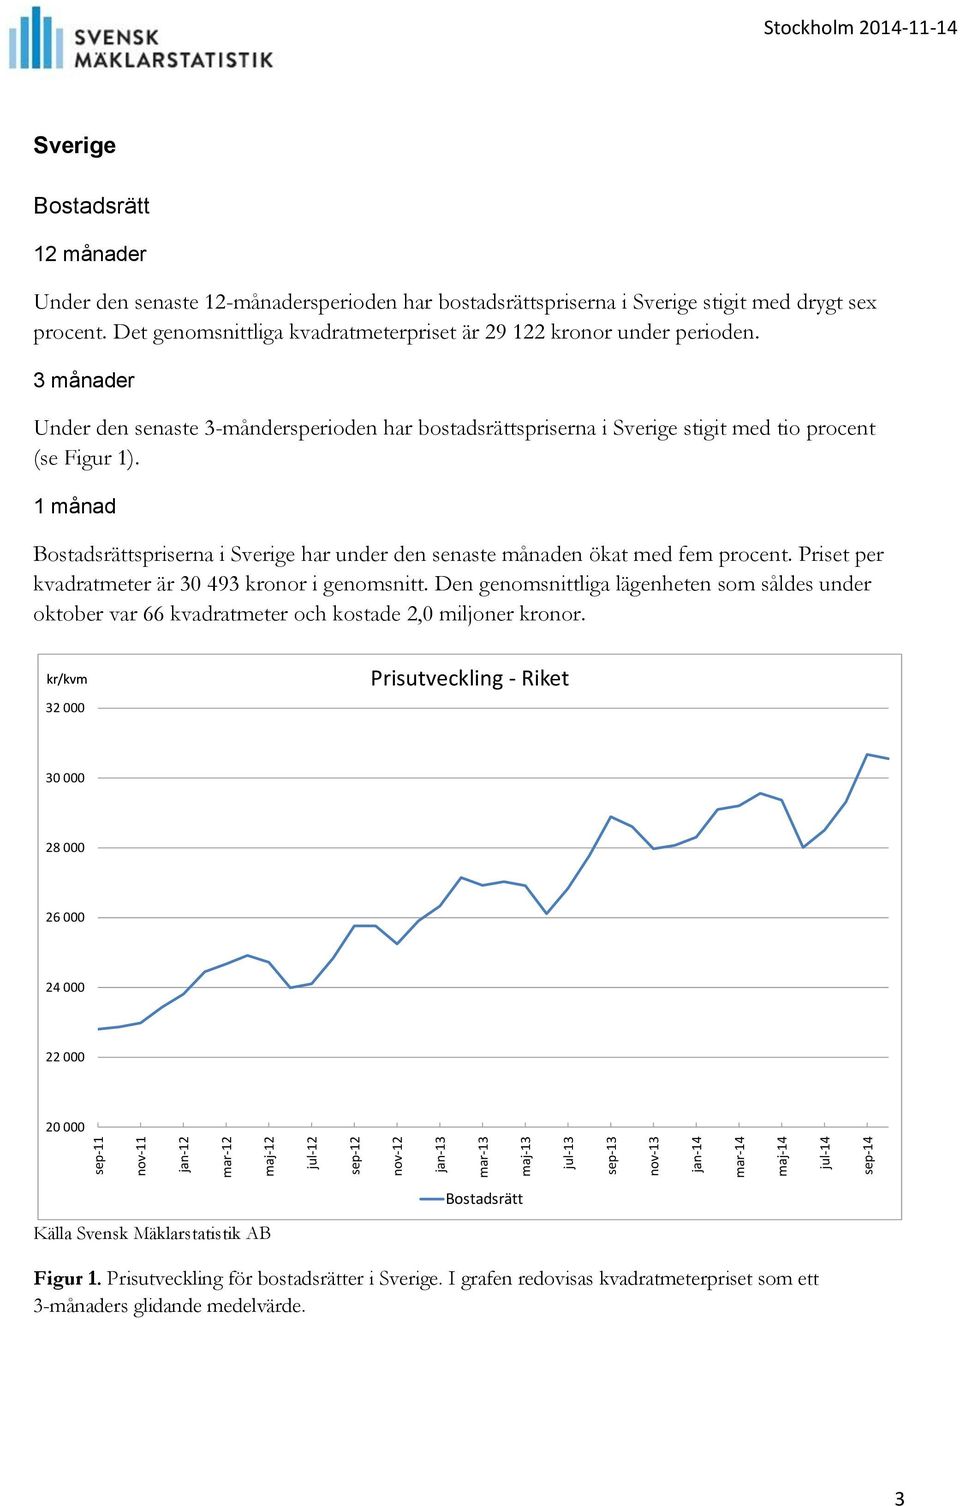 Under den senaste 3-måndersperioden har bostadsrättspriserna i Sverige stigit med tio procent (se Figur 1). 1 månad spriserna i Sverige har under den senaste månaden ökat med fem procent.